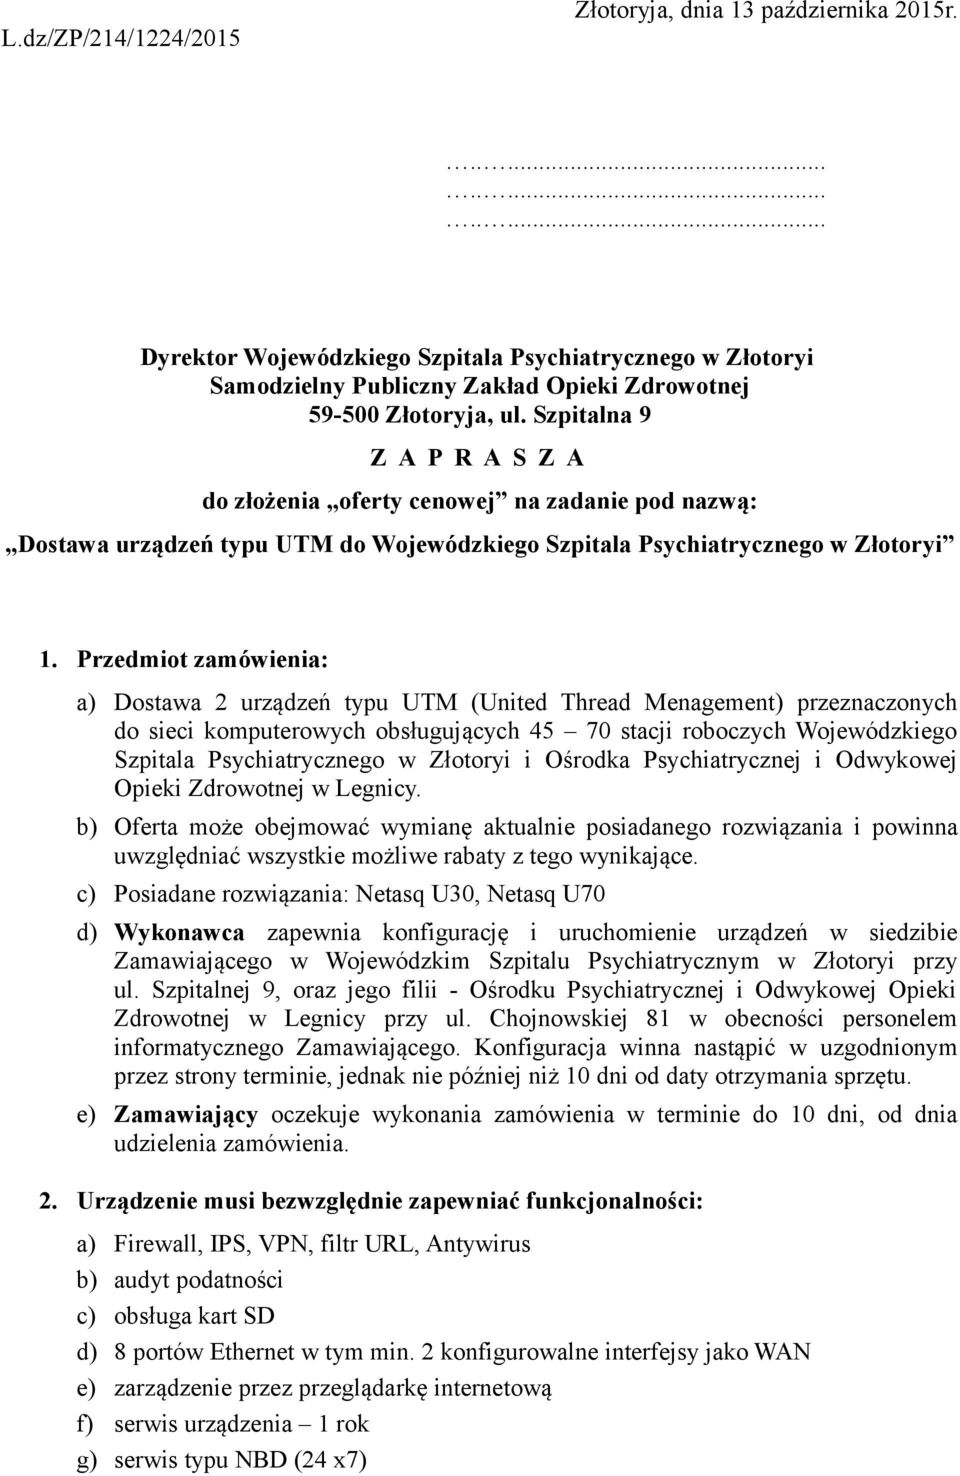 Przedmiot zamówienia: a) Dostawa 2 urządzeń typu UTM (United Thread Menagement) przeznaczonych do sieci komputerowych obsługujących 45 70 stacji roboczych Wojewódzkiego Szpitala Psychiatrycznego w